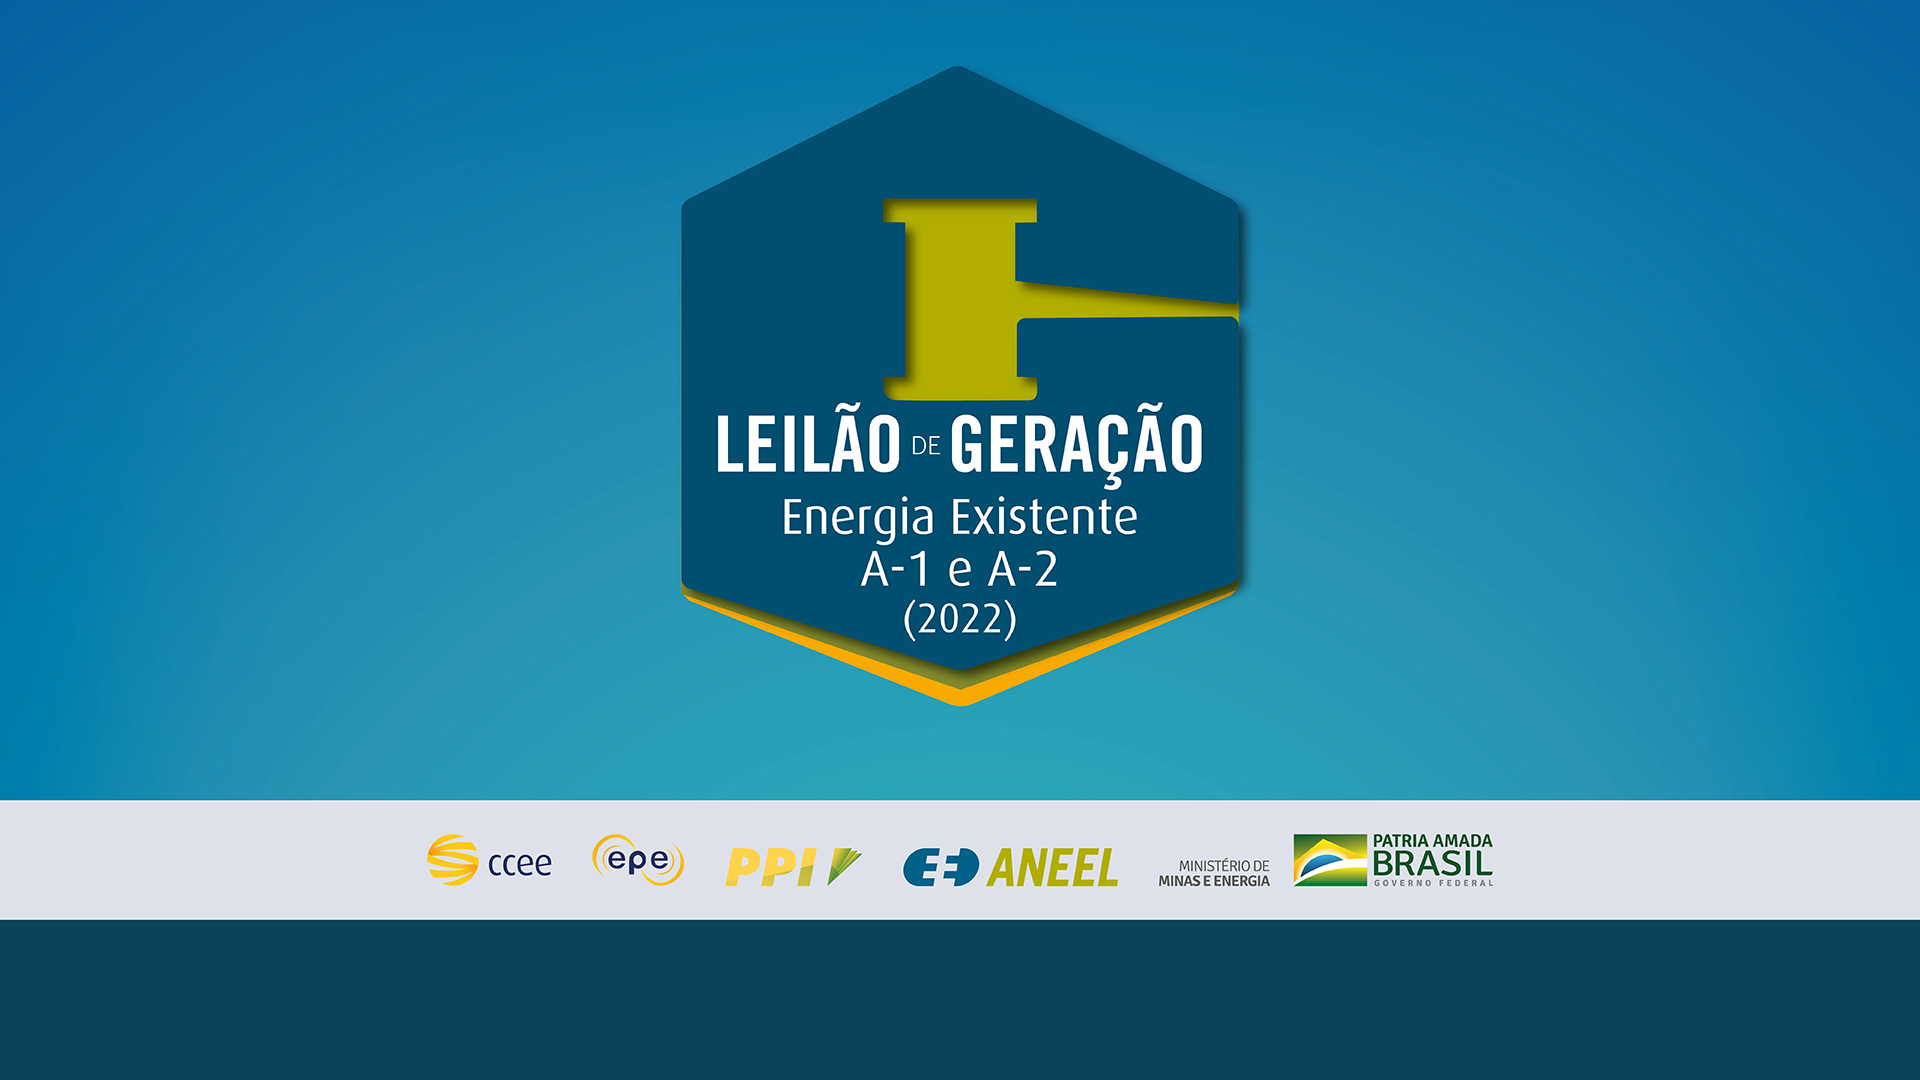 Imagem destaca o logo do leilão de energia existente